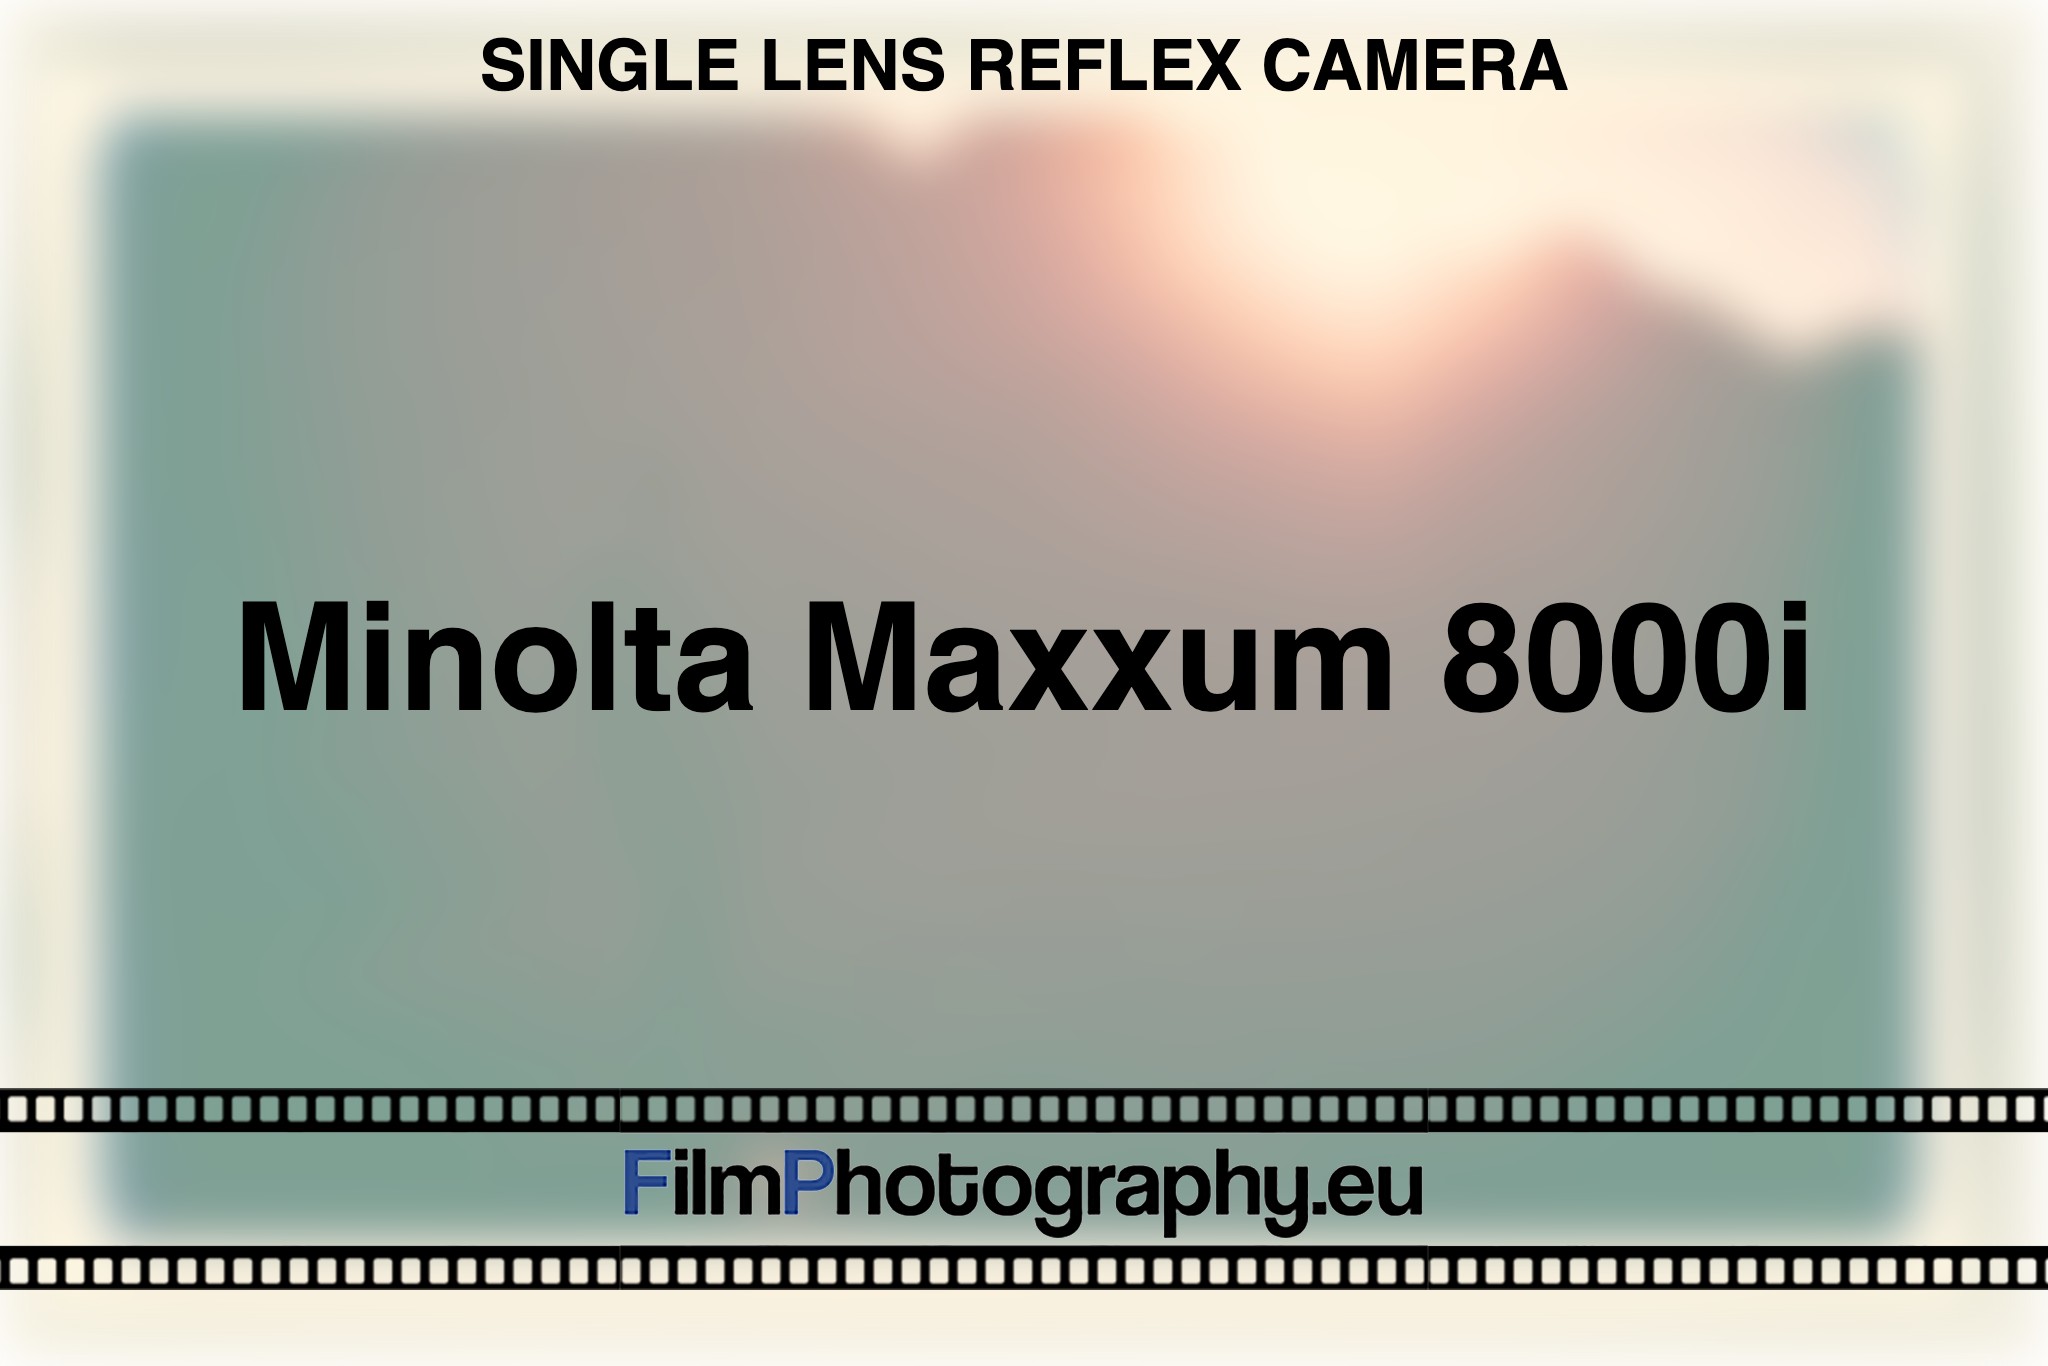 minolta-maxxum-8000i-single-lens-reflex-camera-bnv